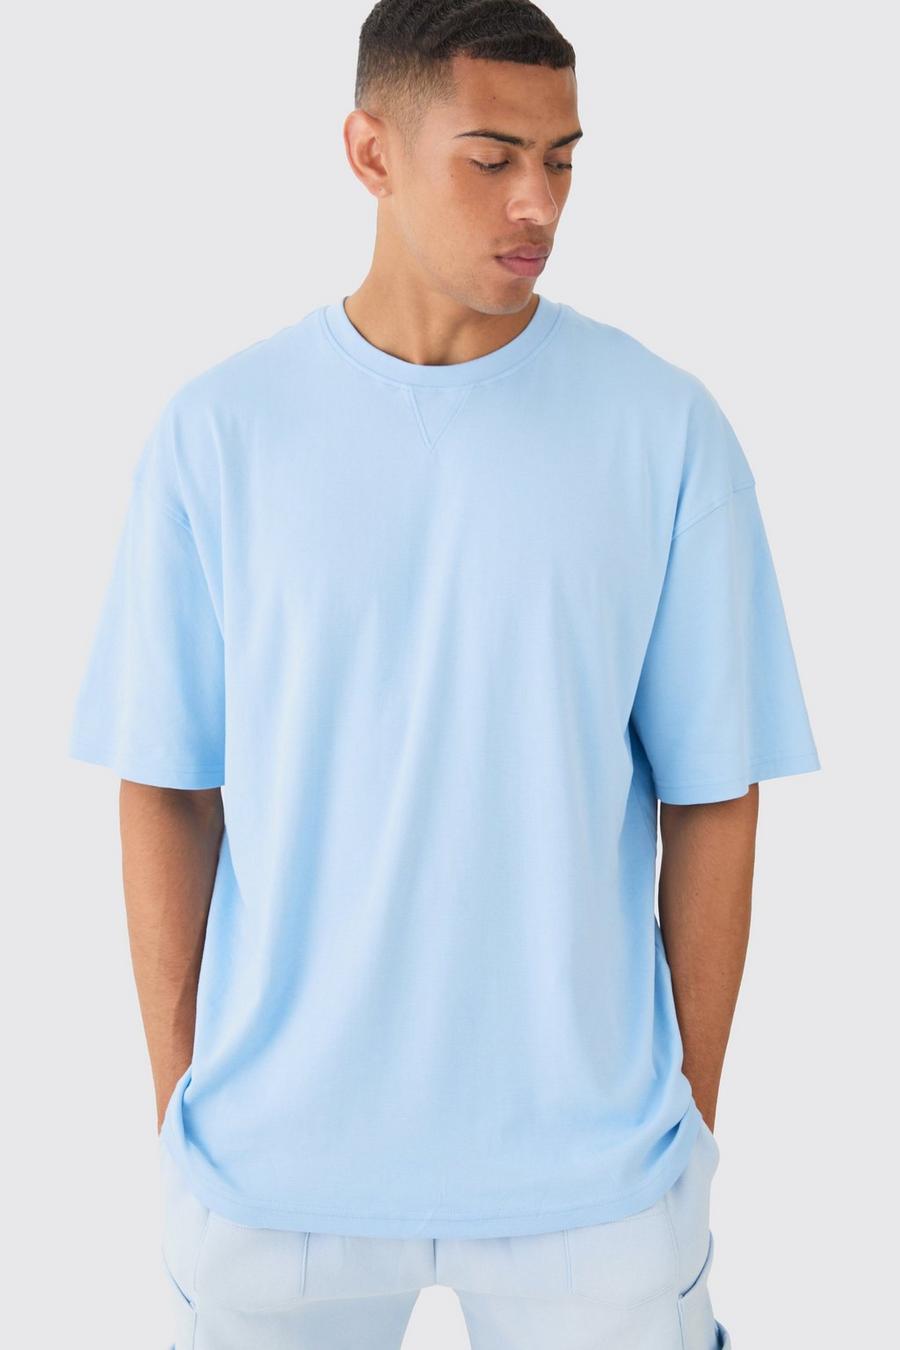 Camiseta oversize Premium súper limpia, Pastel blue